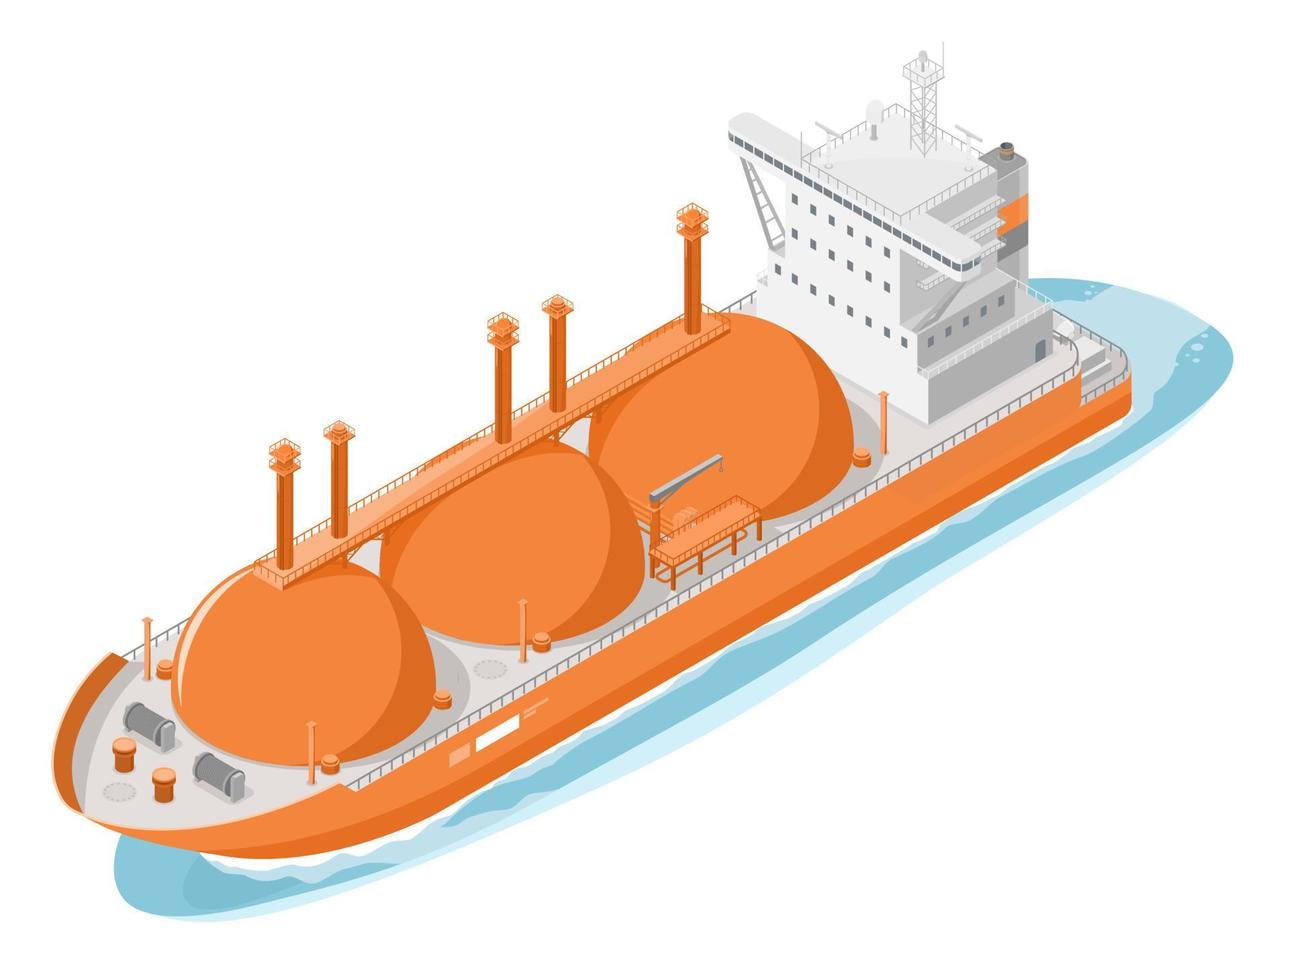 réservoir de gaz et de pétrole navire importation exportation transport de gaz naturel liquéfié dessin animé isométrique vecteur orange isolé